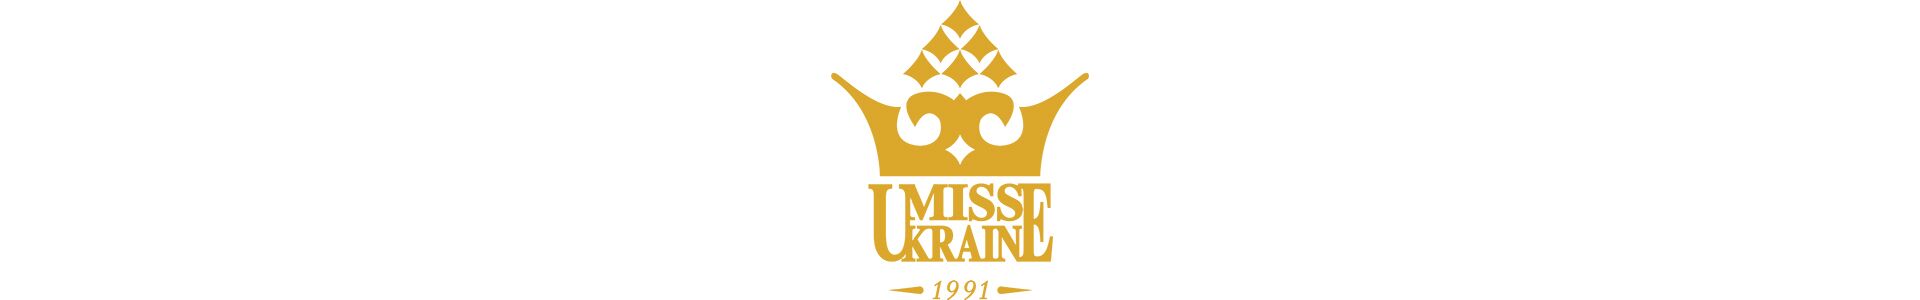 Олександра Кучеренко Міс Україна 2016 презентувала гардероб, фінальна сукня і сувеніри для конкурсу "Міс Світу"